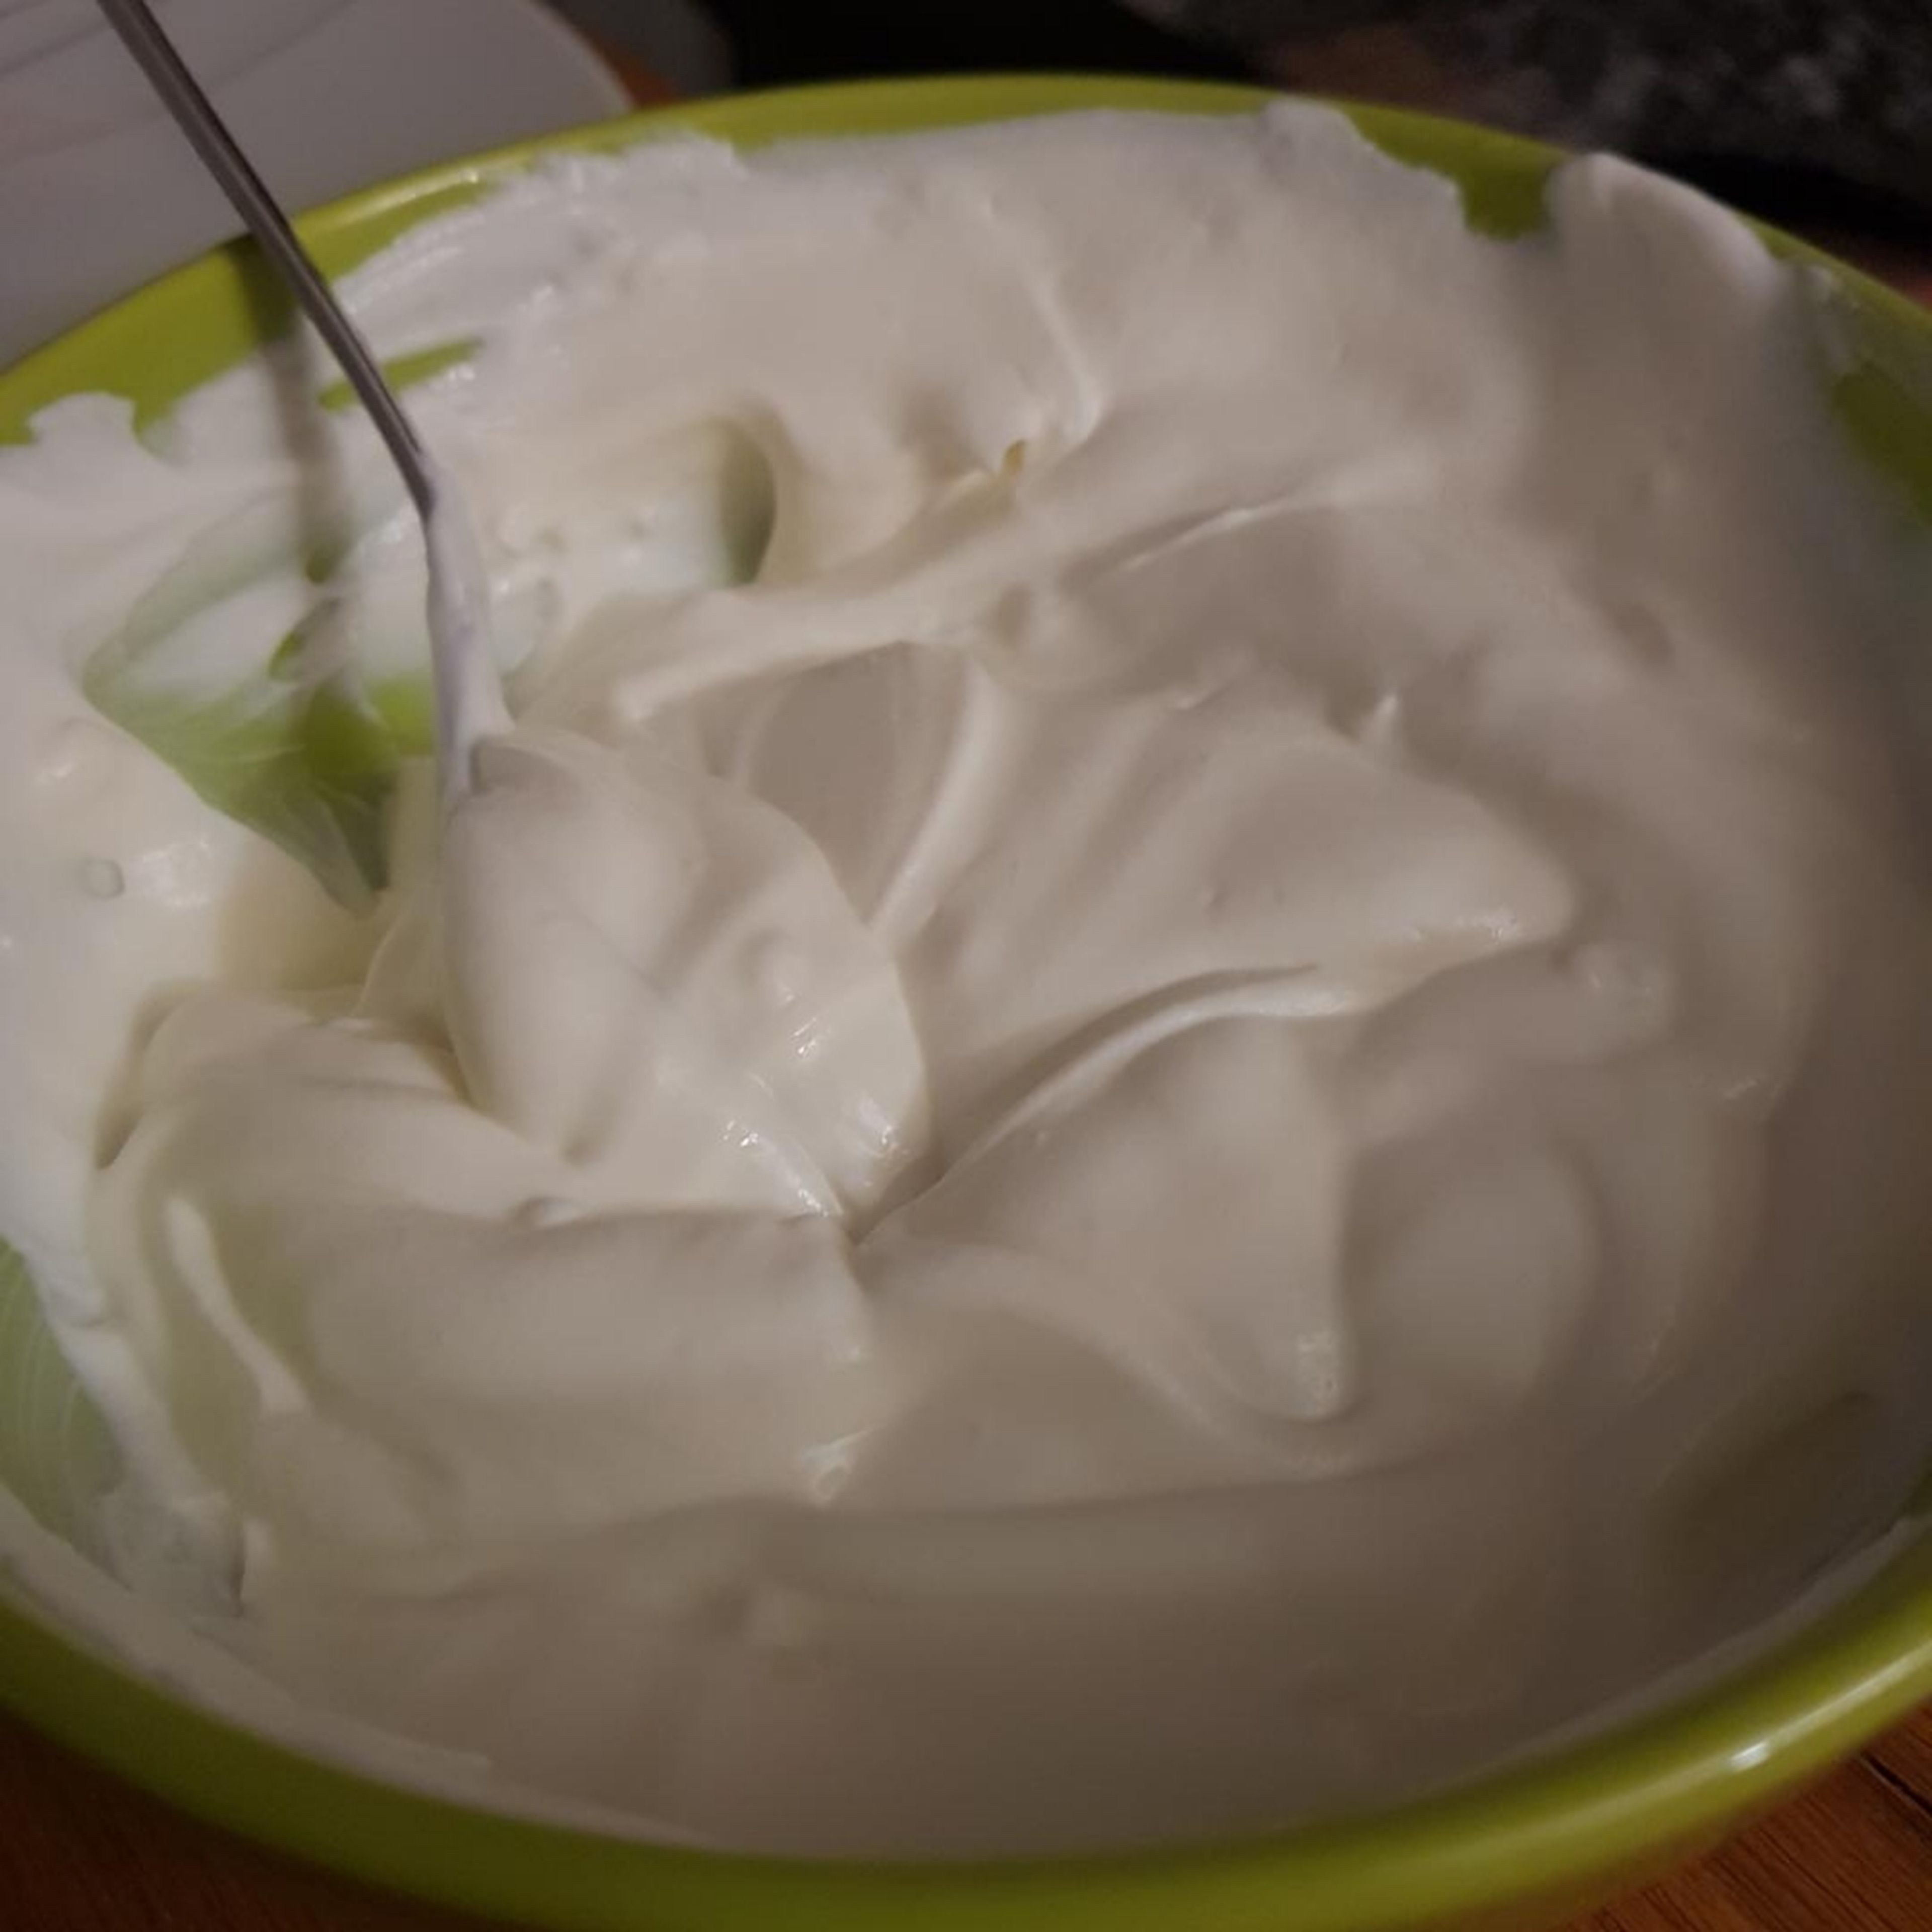 Knoblauch fein würfeln oder pressen und mit griechischem Joghurt vermischen